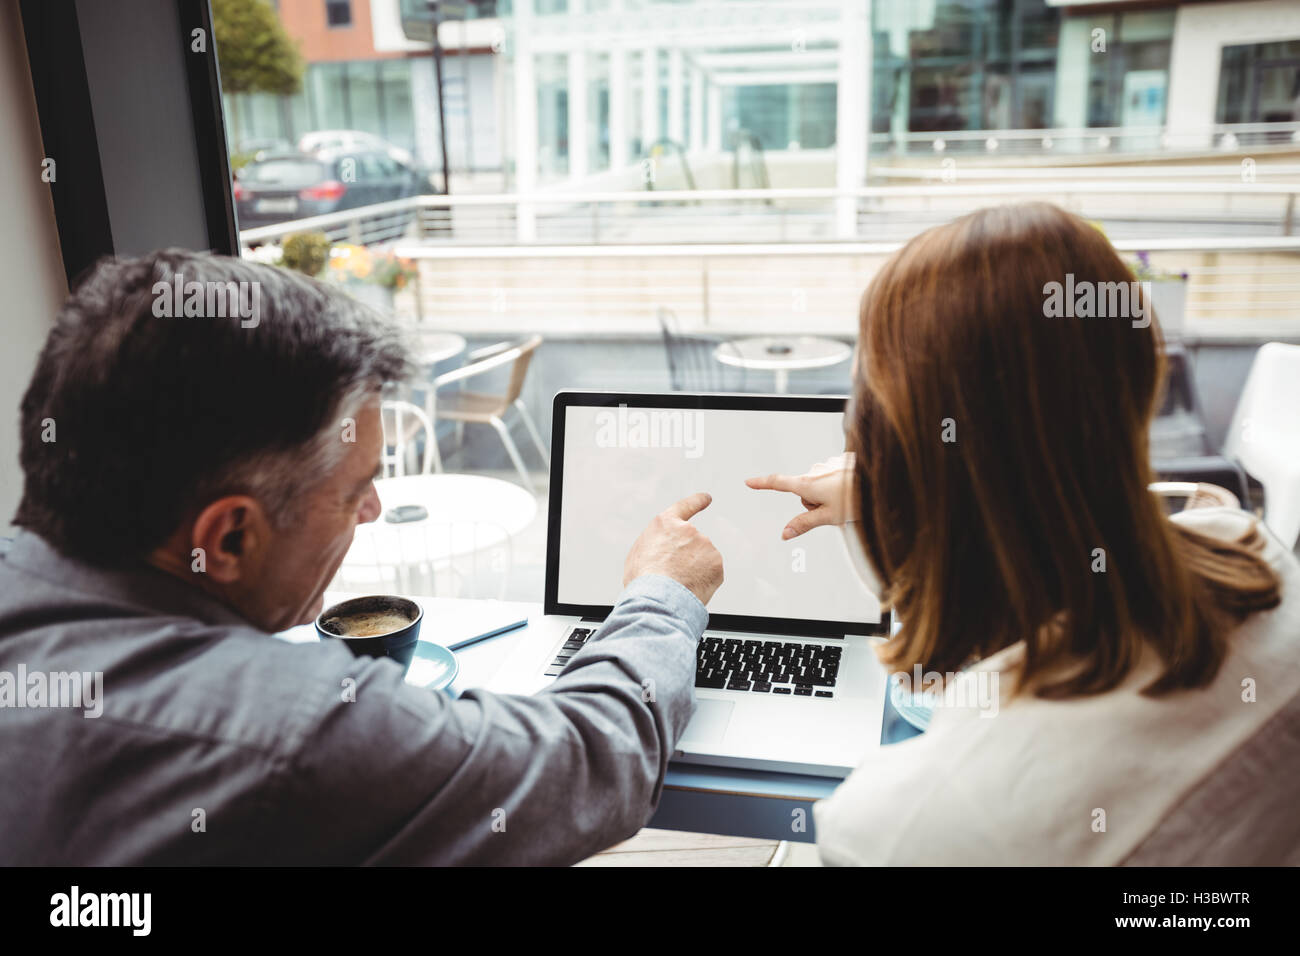 L'homme et la femme discussing over laptop Banque D'Images